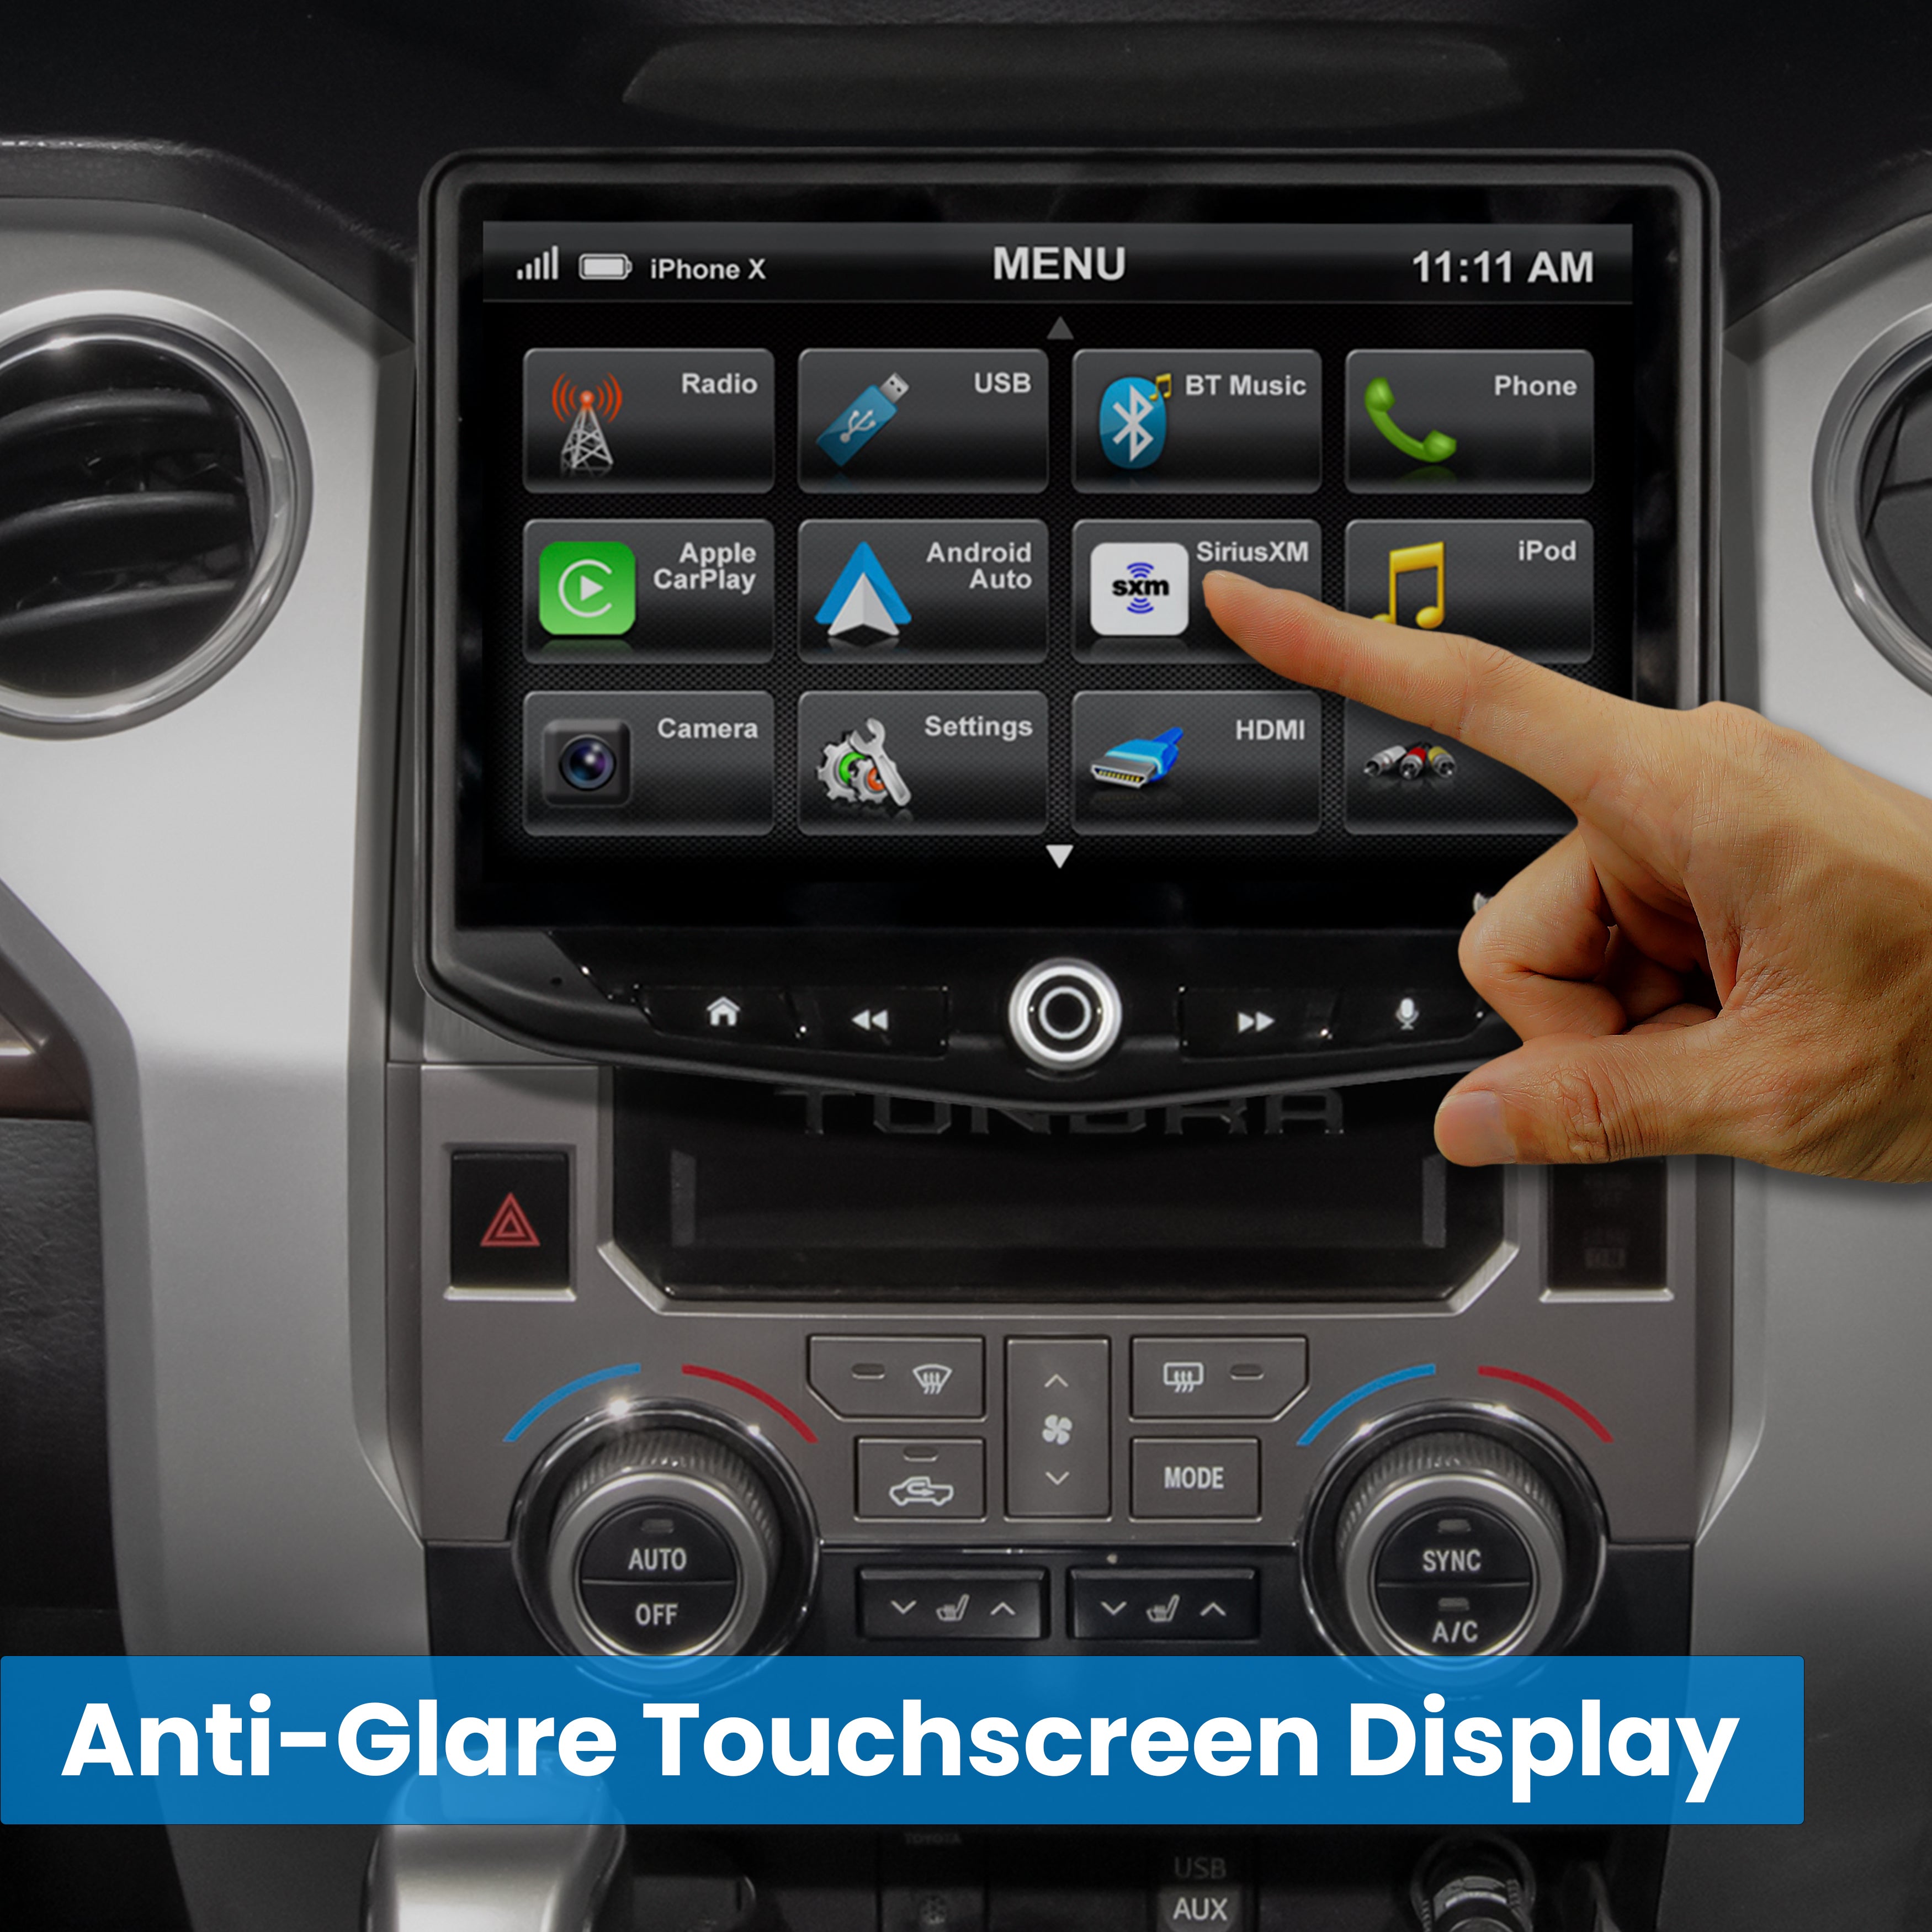 Toyota Tundra (2014-2021) HEIGH10 10" Plug-and-Play Radio Kit